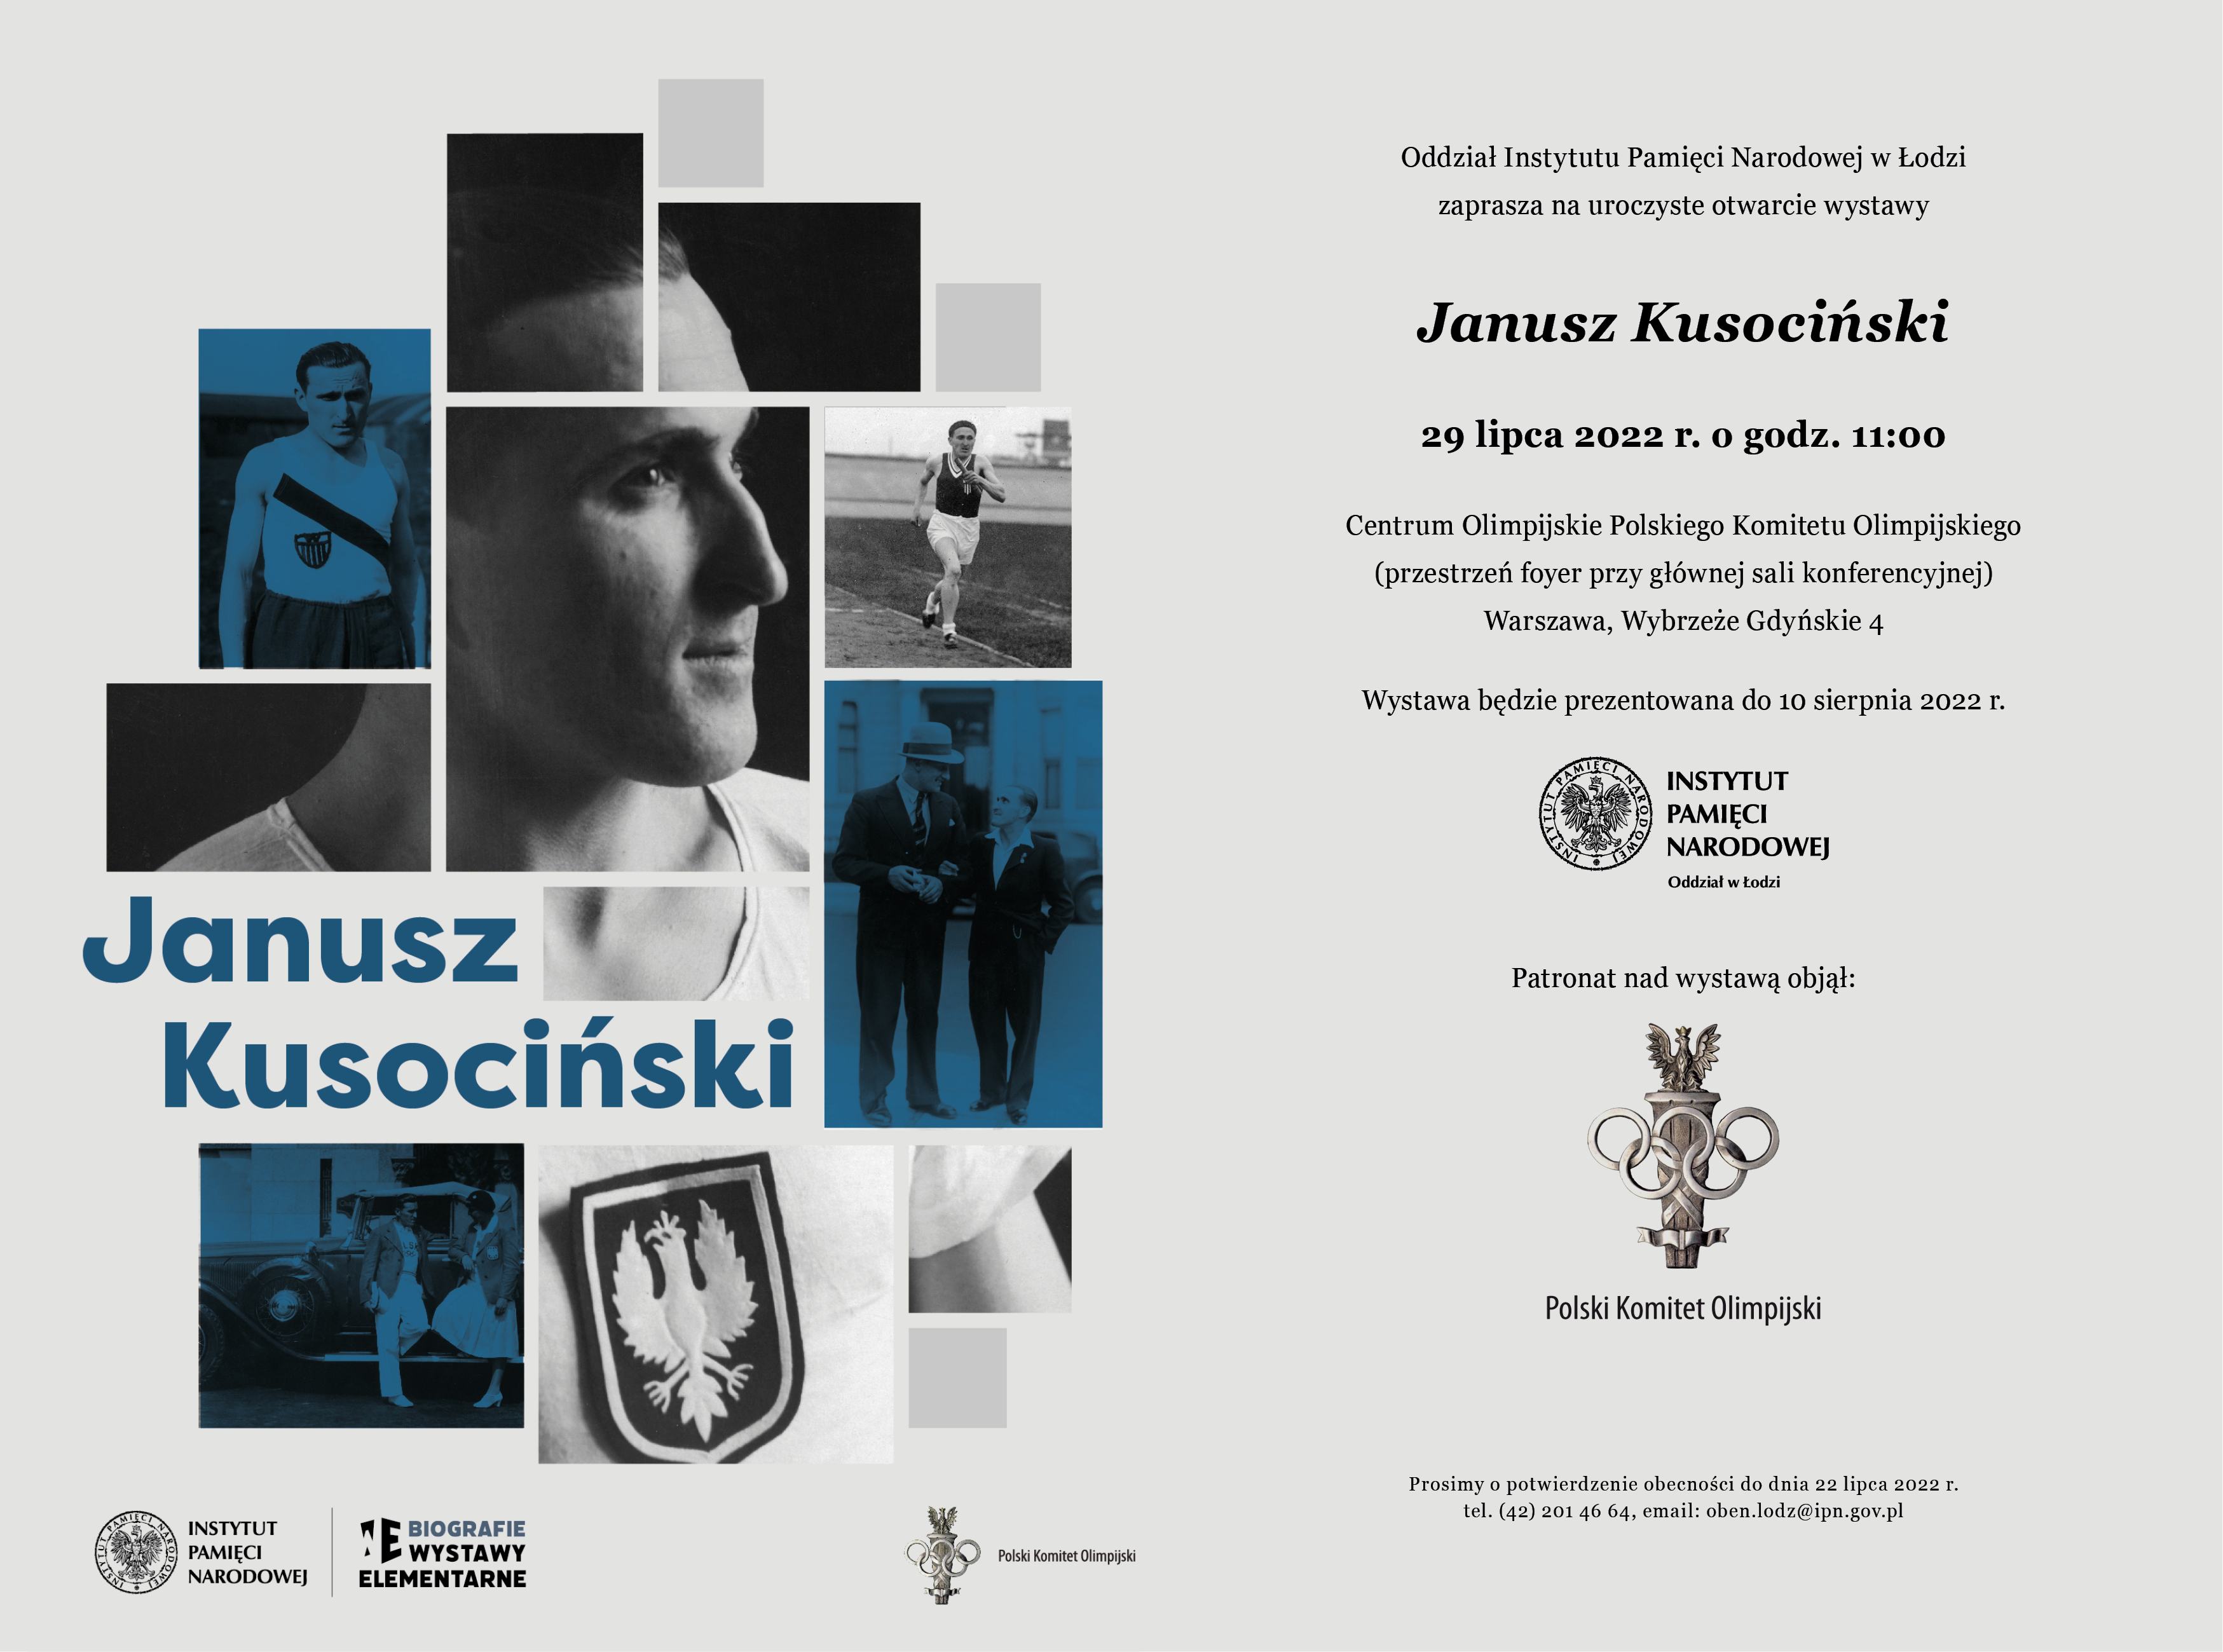 Uroczyste otwarcie wystawy Janusz Kusociński, które odbędzie się 29 lipca 2022 r. o godz. 11.00 w Centrum Olimpijskim 